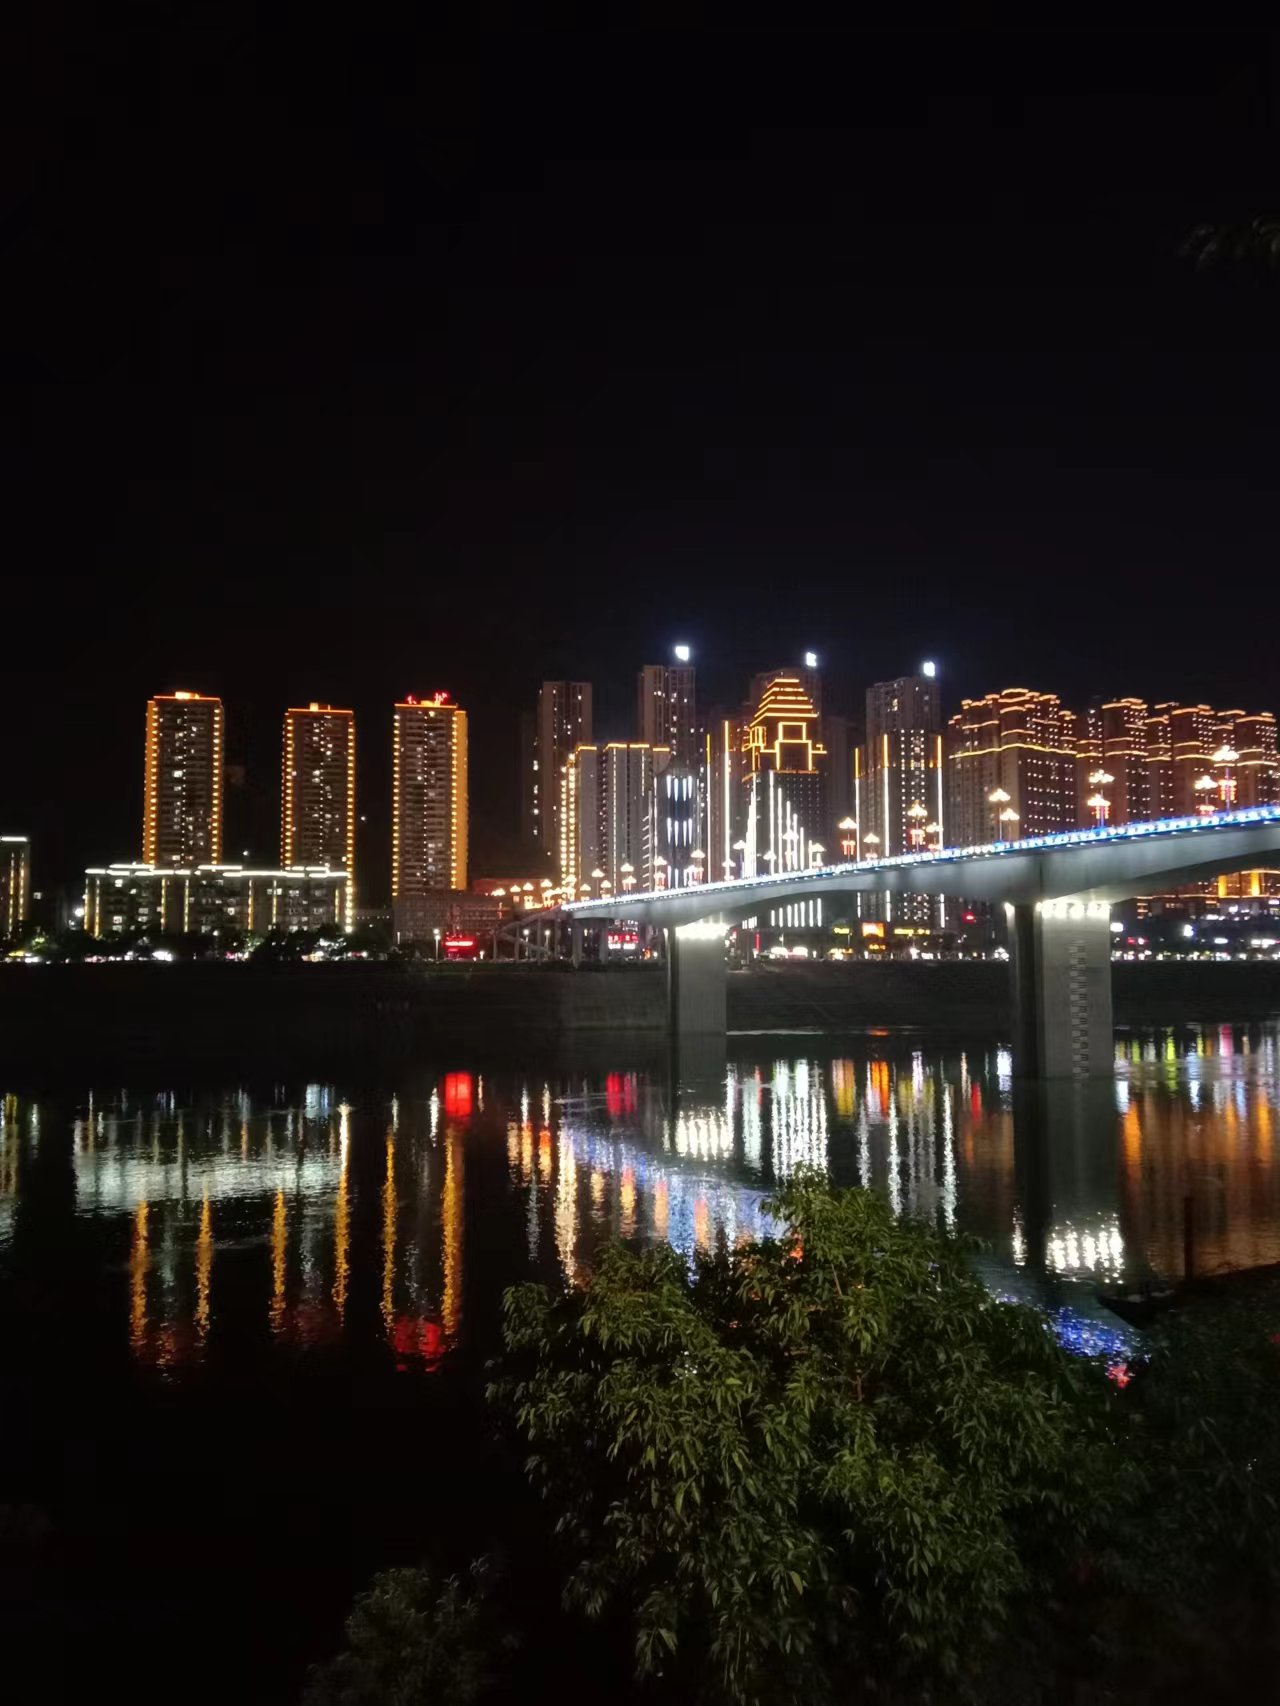 彭水夜间乌江画廊旅游景区品质提升夜间经济灯饰工程